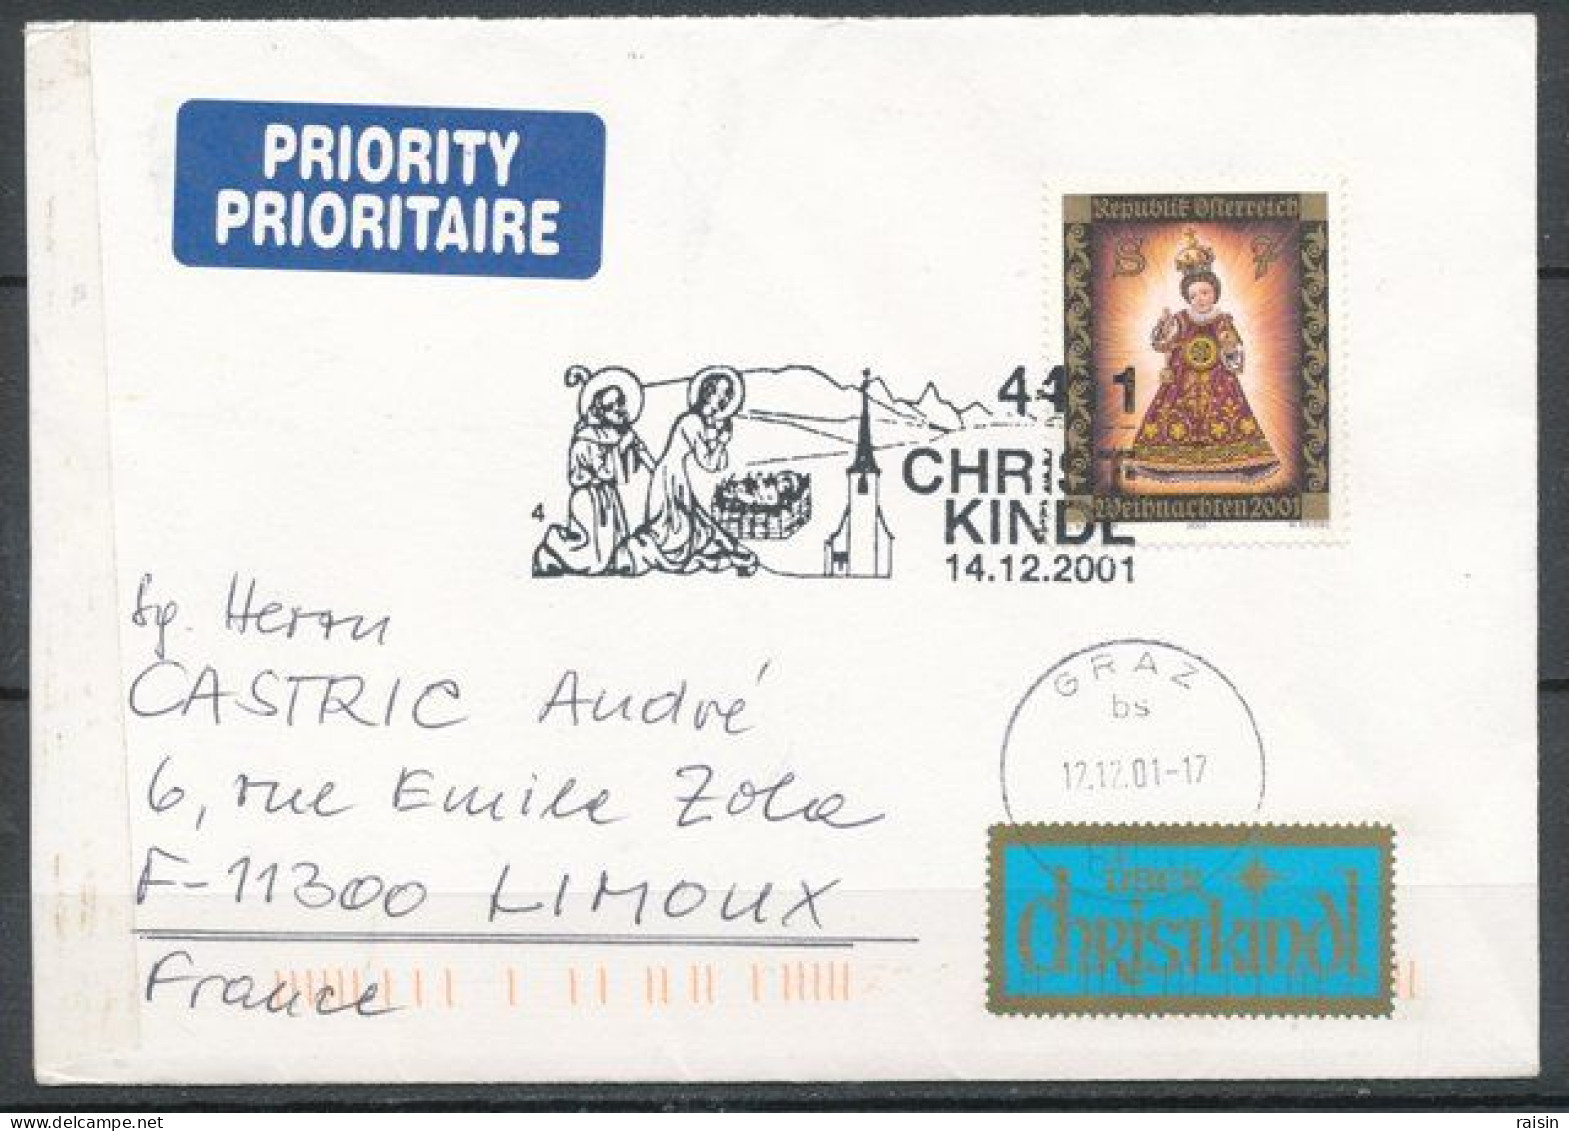 Autriche 1997, 1999, 2001 Oblitérations Kristkindl Sur Enveloppes Ayant Circulé - Lettres & Documents